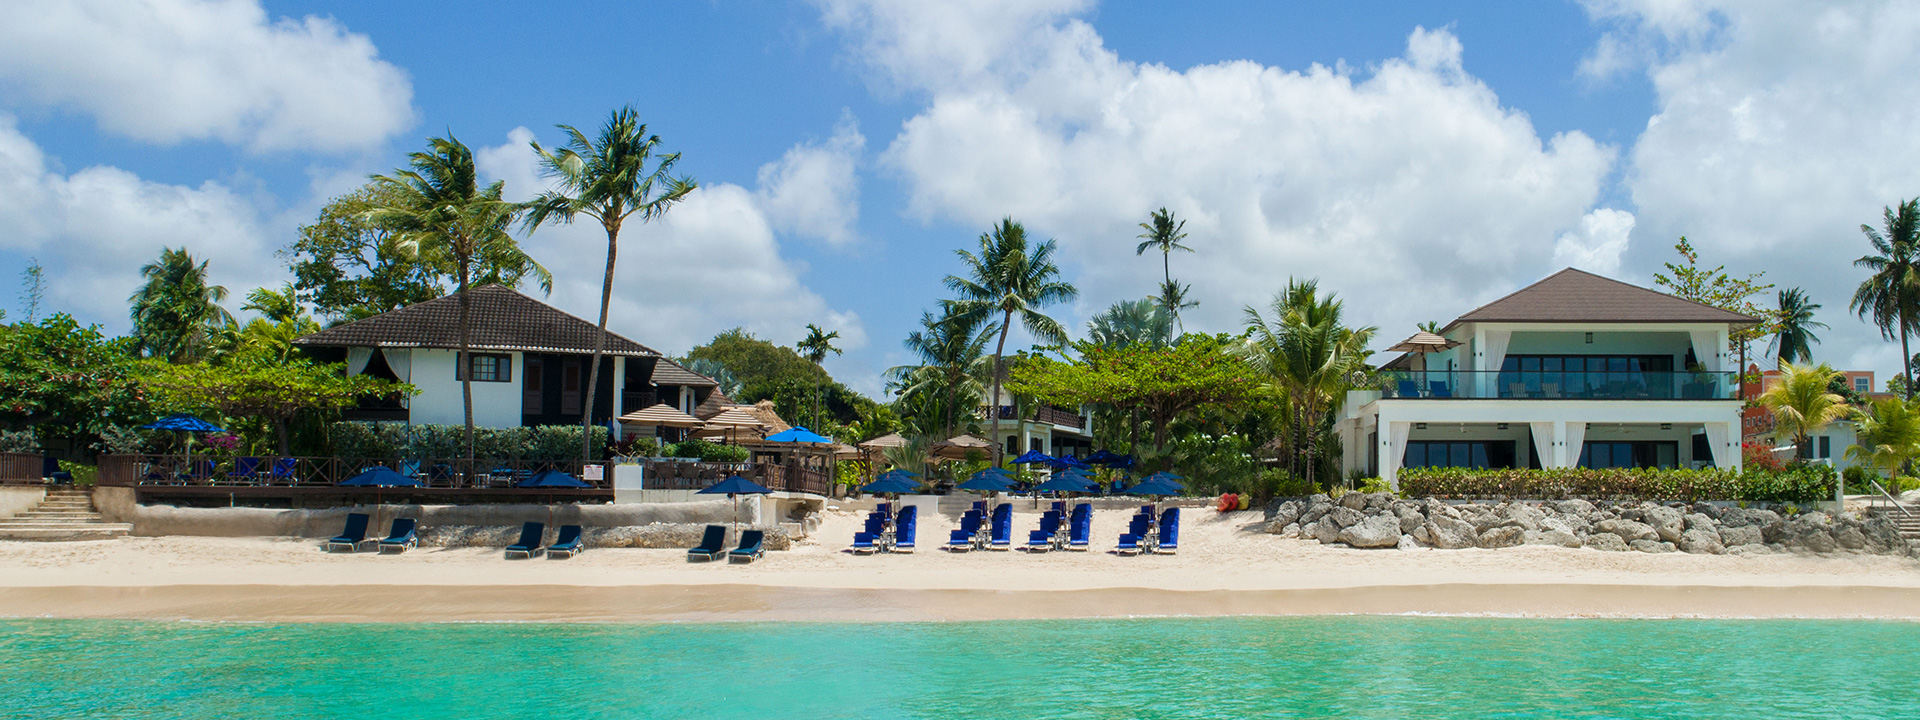 Sandpiper Hotel - Barbados